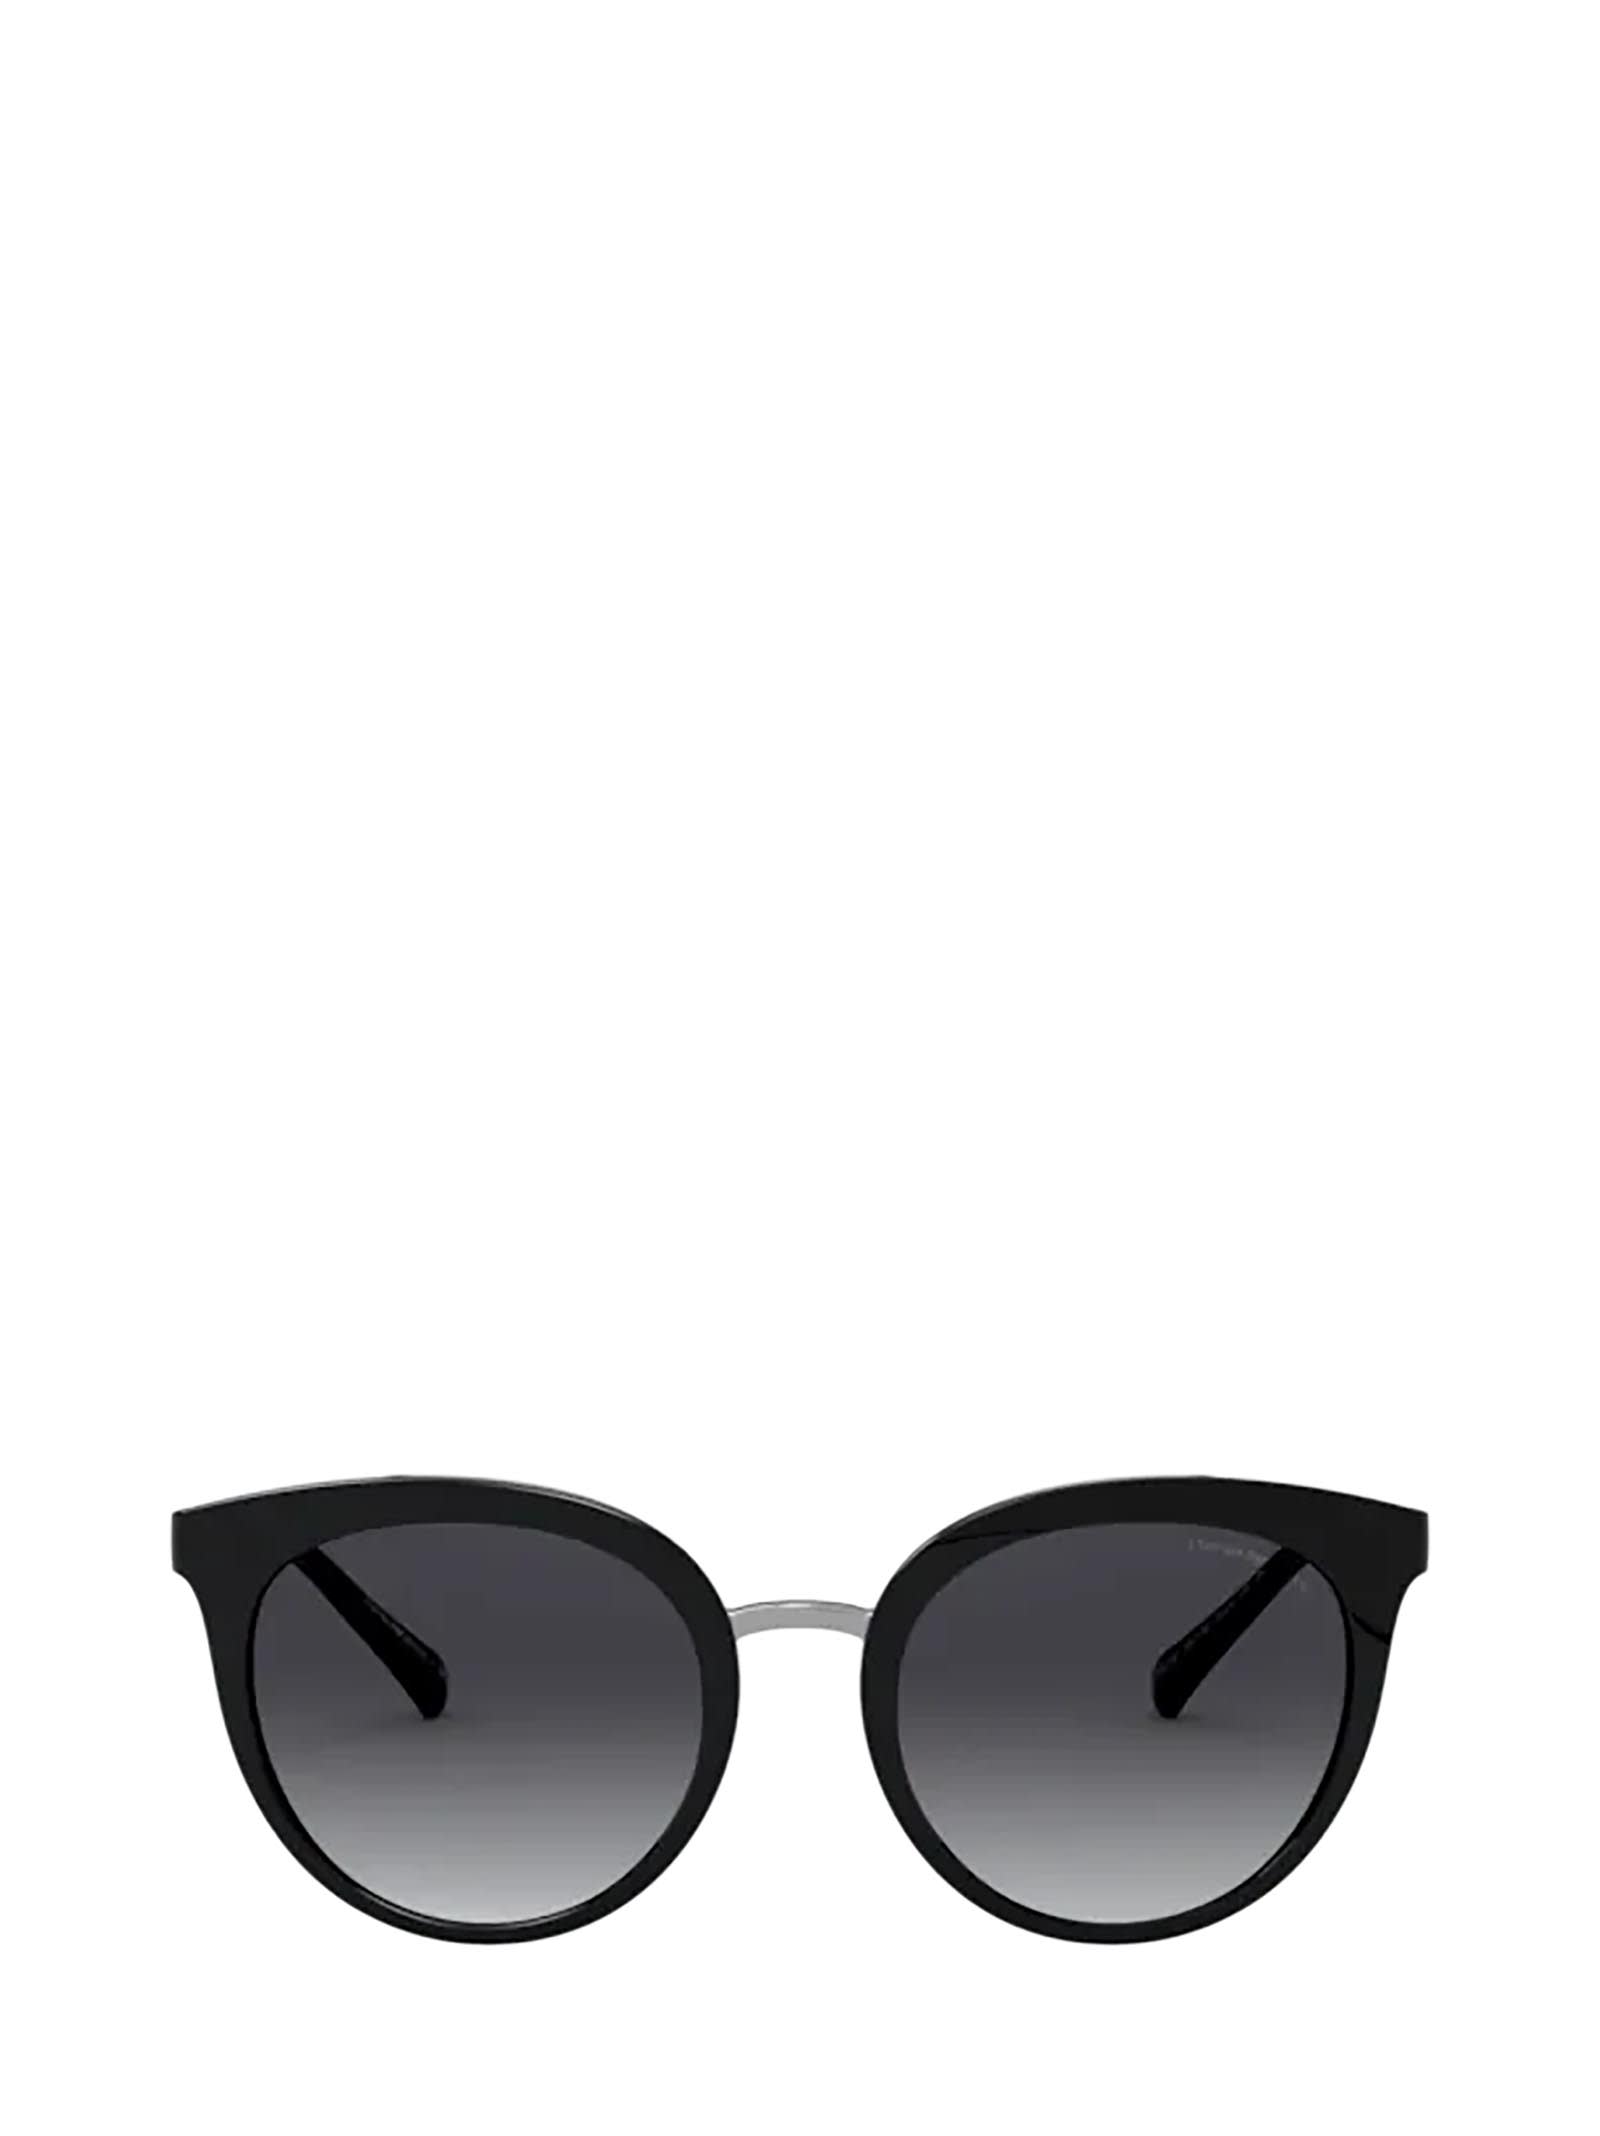 Emporio Armani Emporio Armani Ea4145 Shiny Black Sunglasses